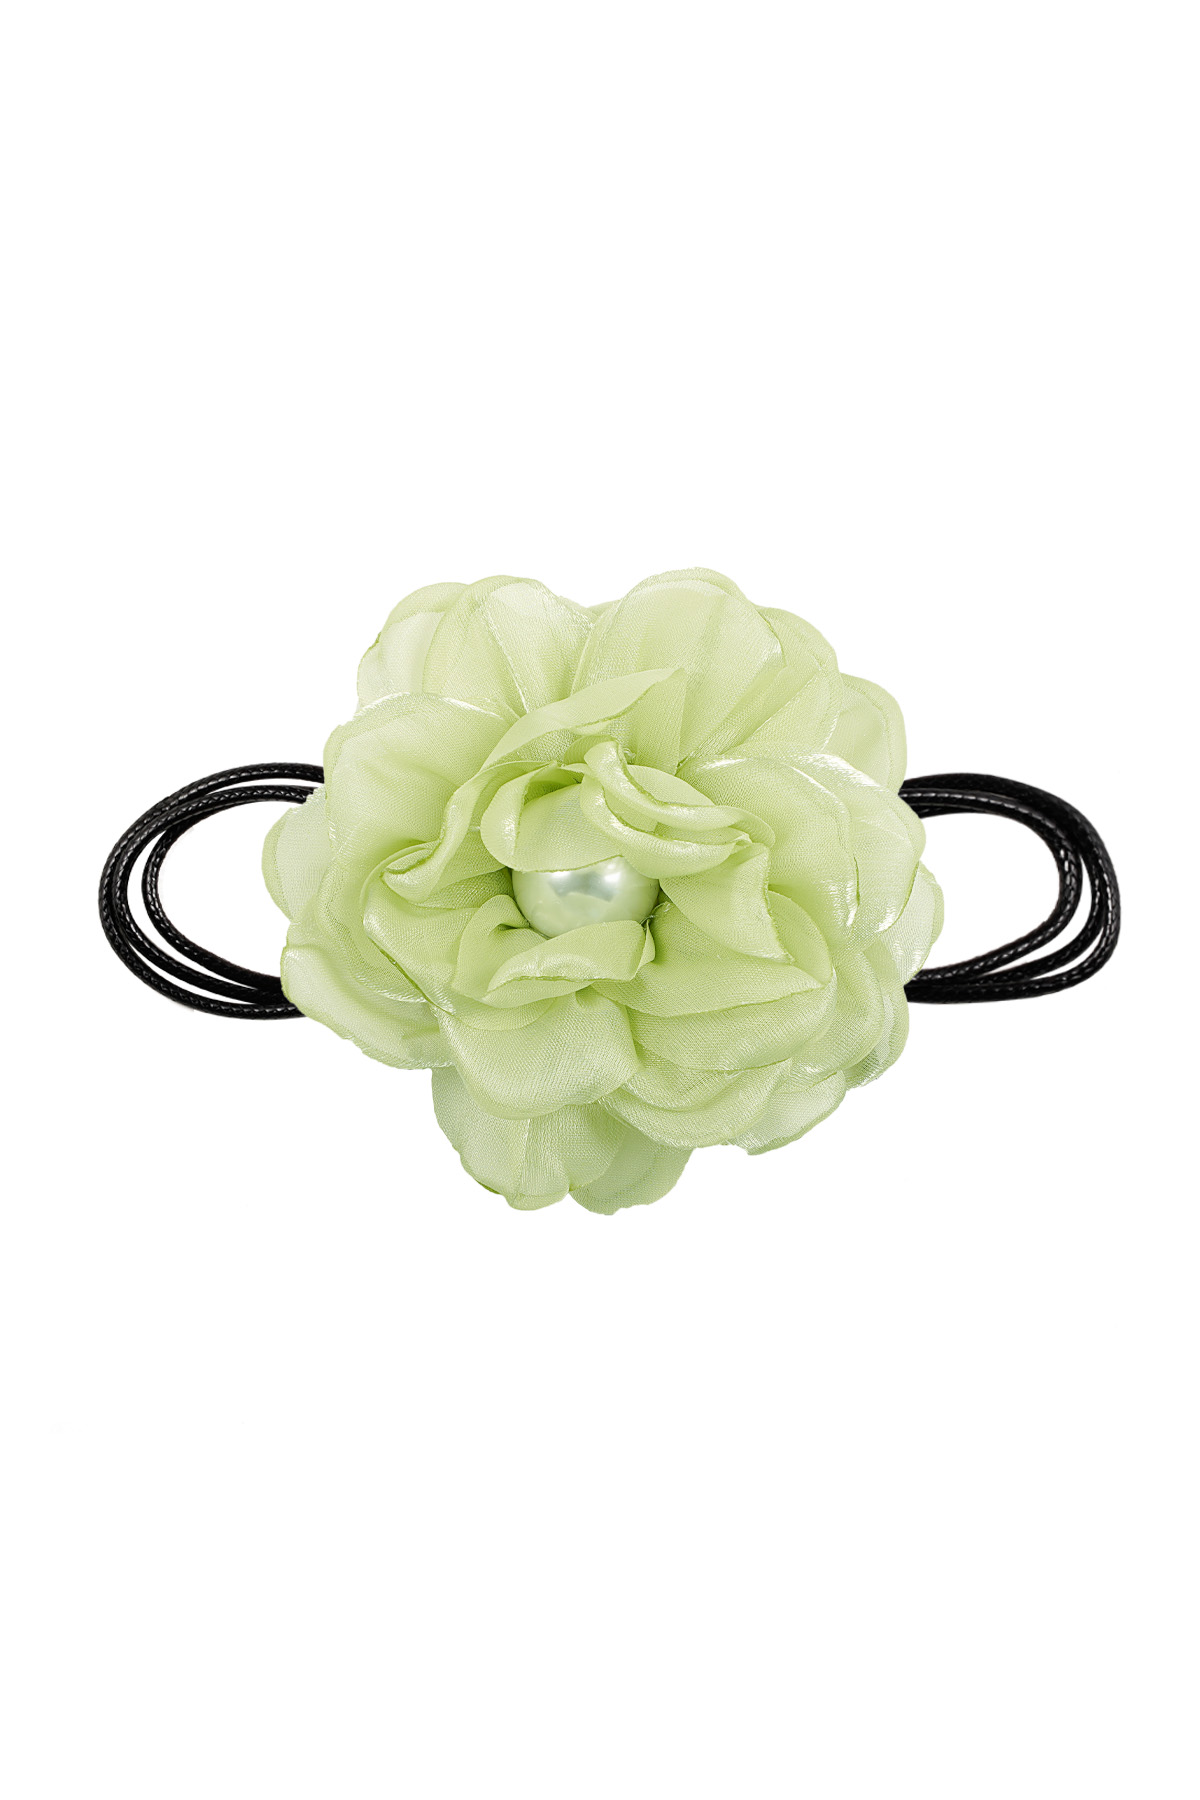 Cadena de cuerda con flor - verde h5 